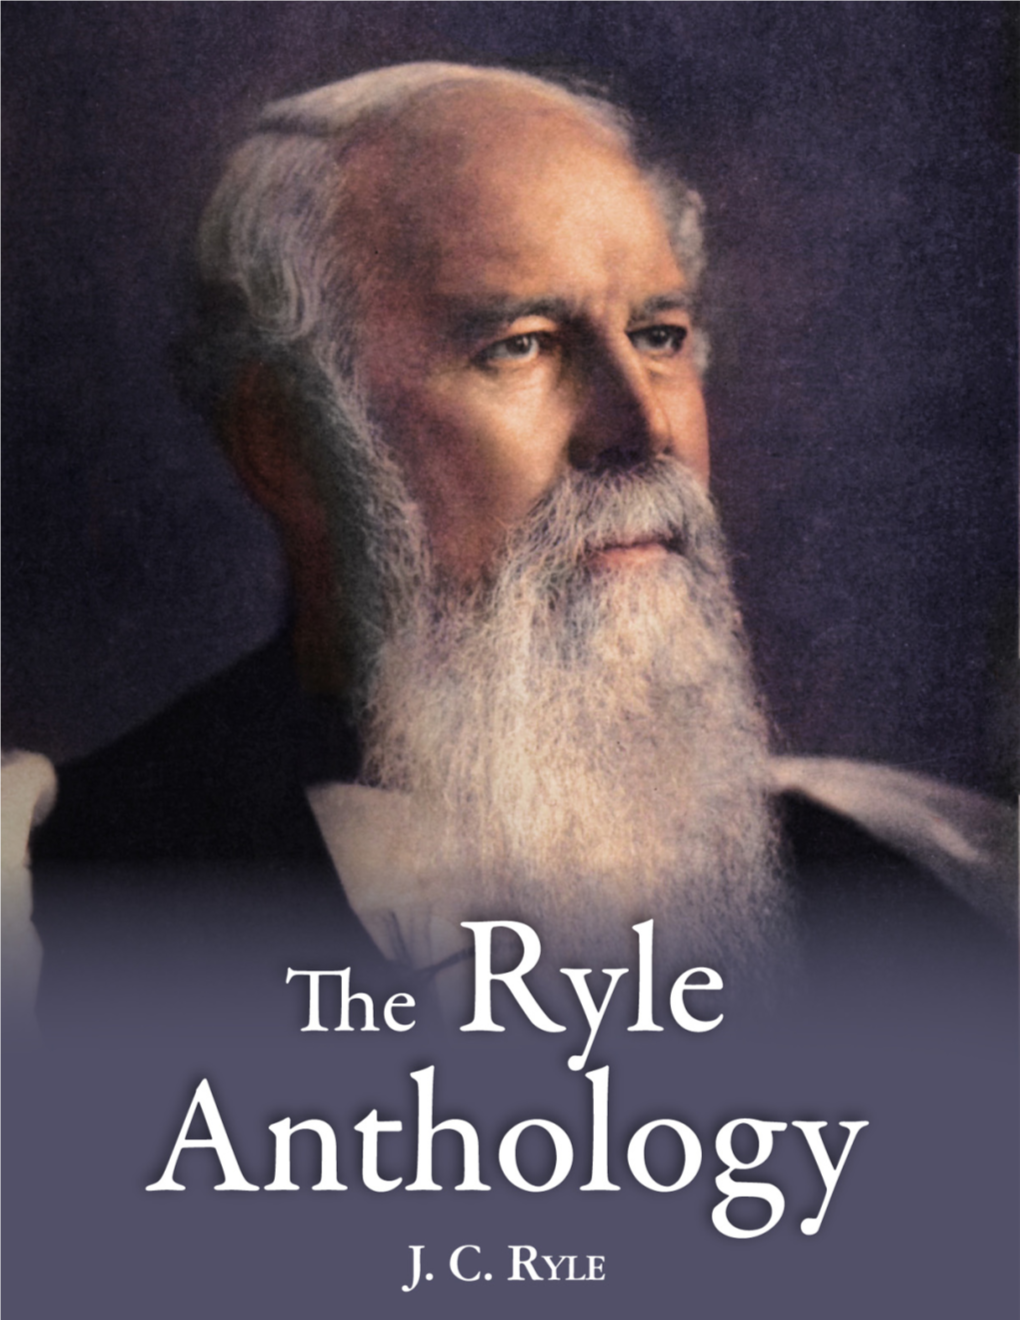 The RYLE ANTHOLOGY